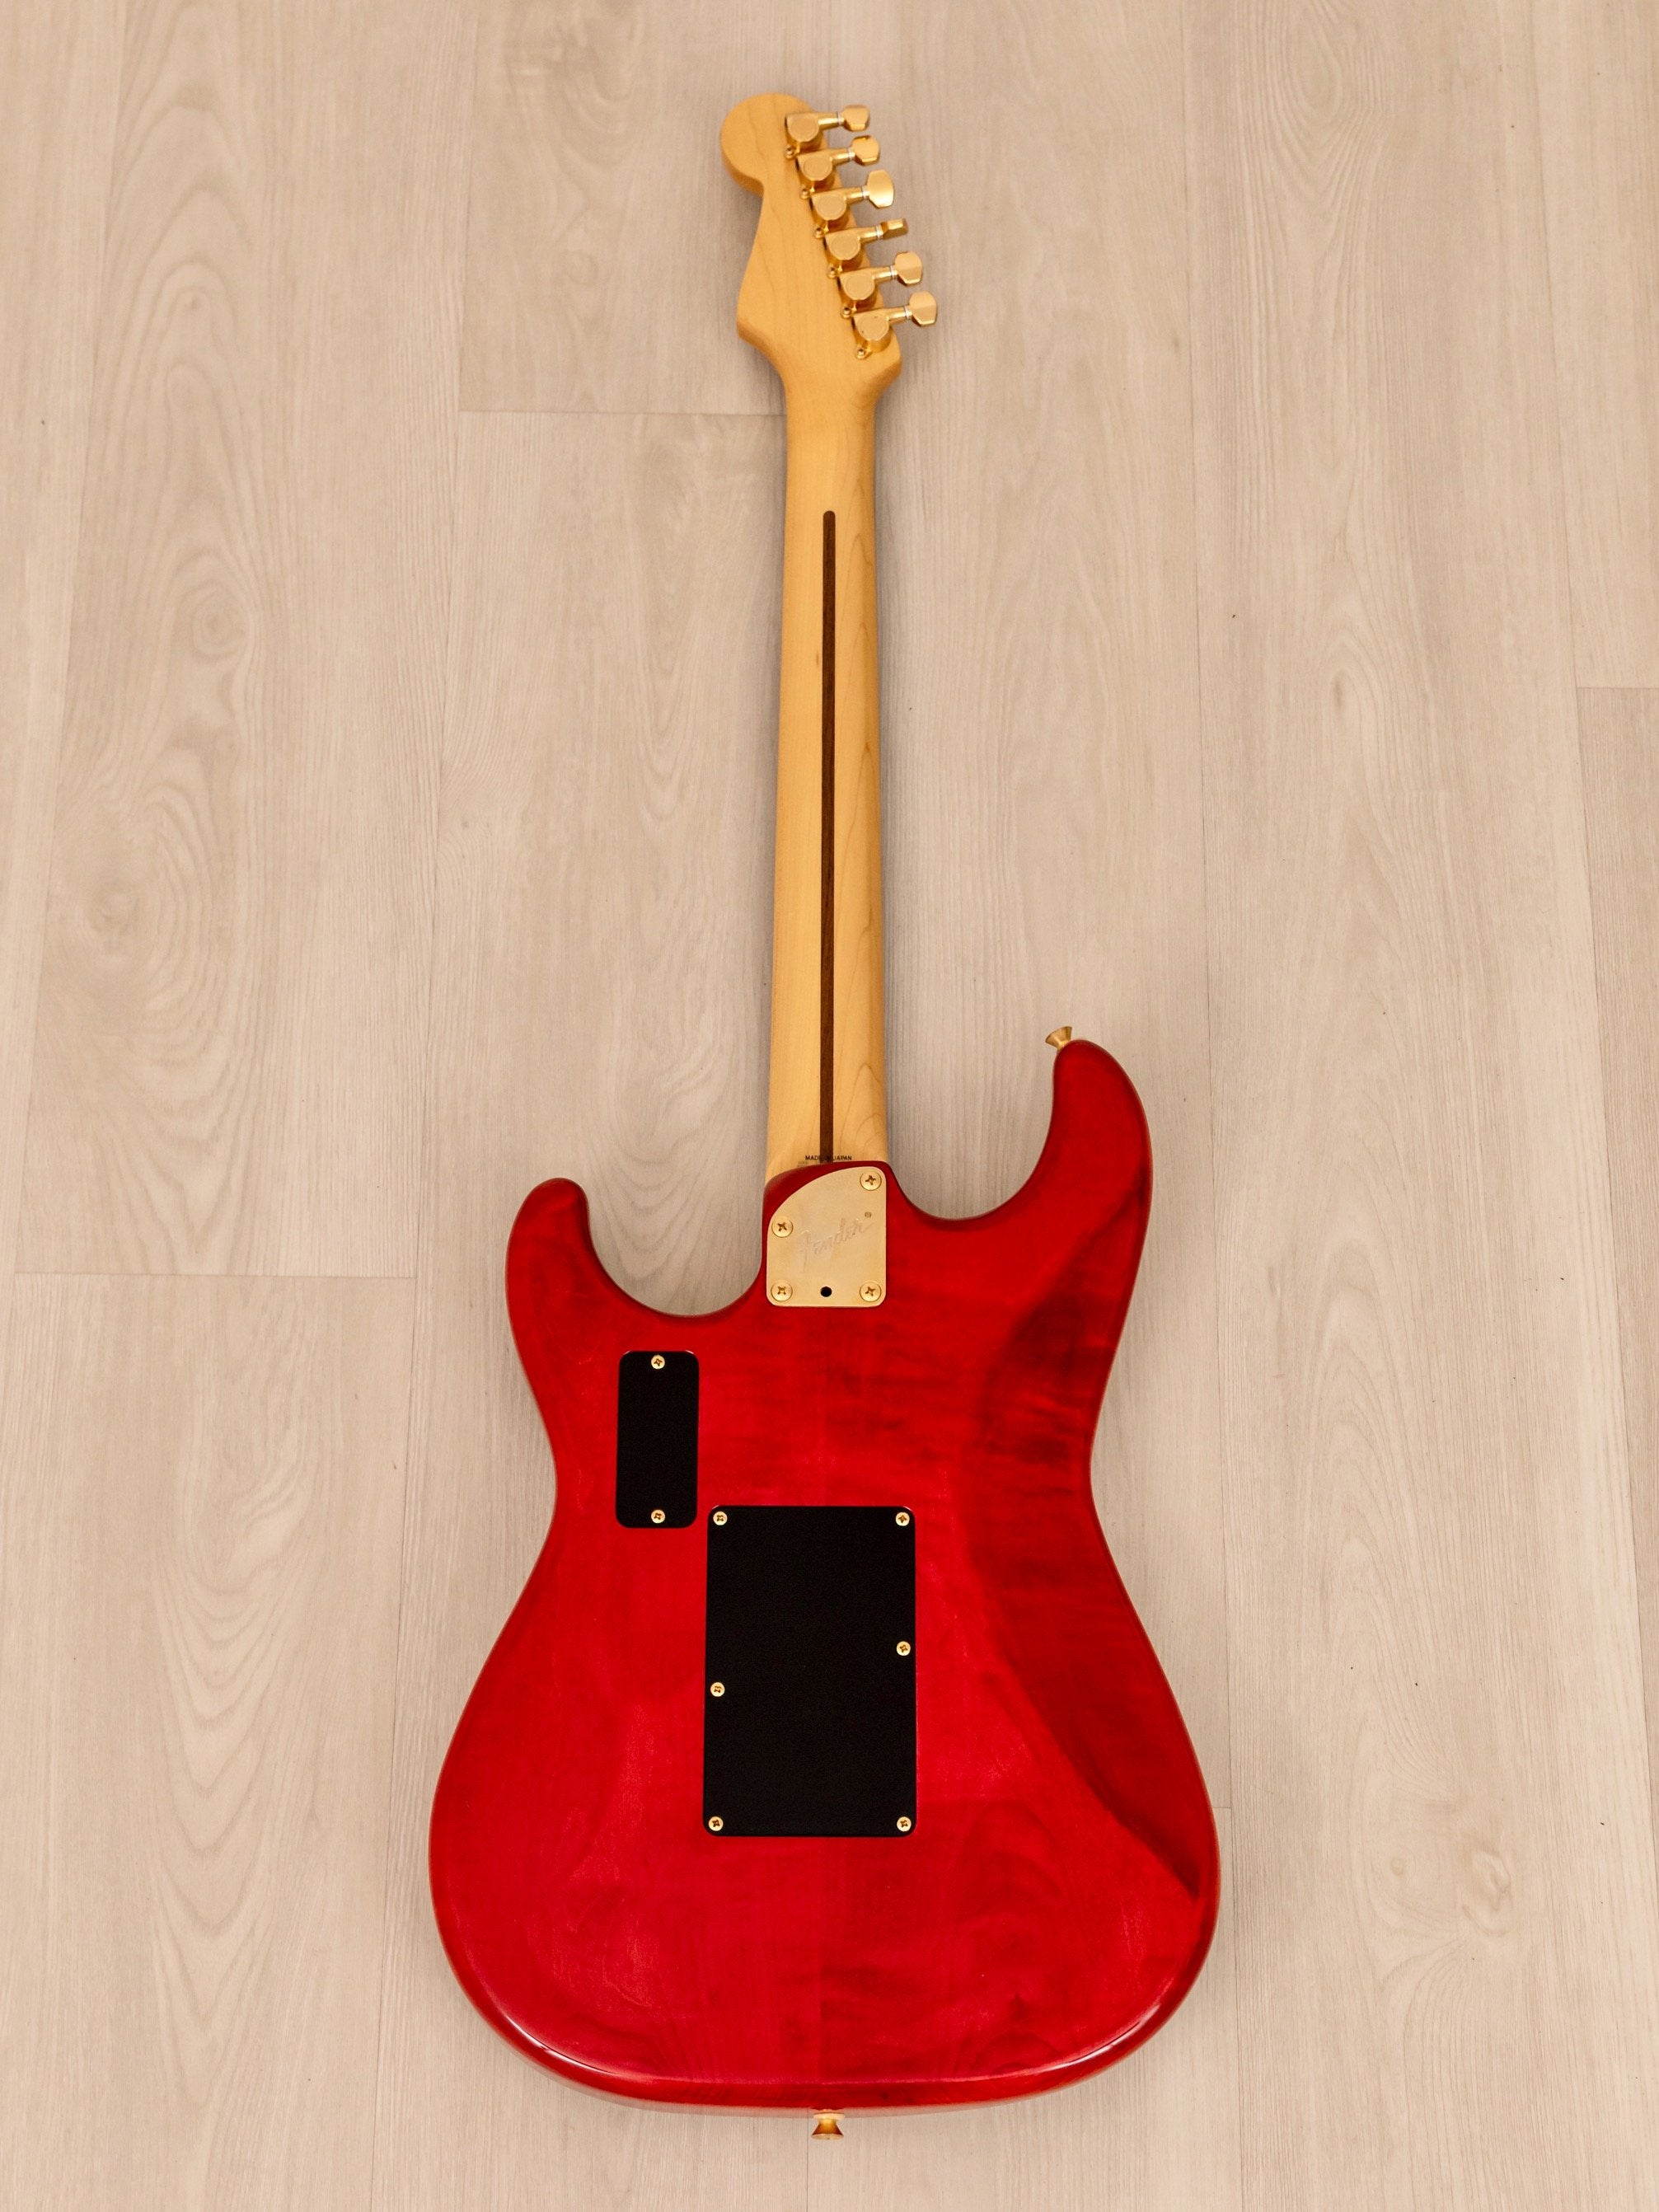 1991 Fender Stratocaster STR-1300 LSR Non-Catalog w/ USA Lace Sensor, Floyd Rose, Gold Hardware, Japan MIJ Fujigen